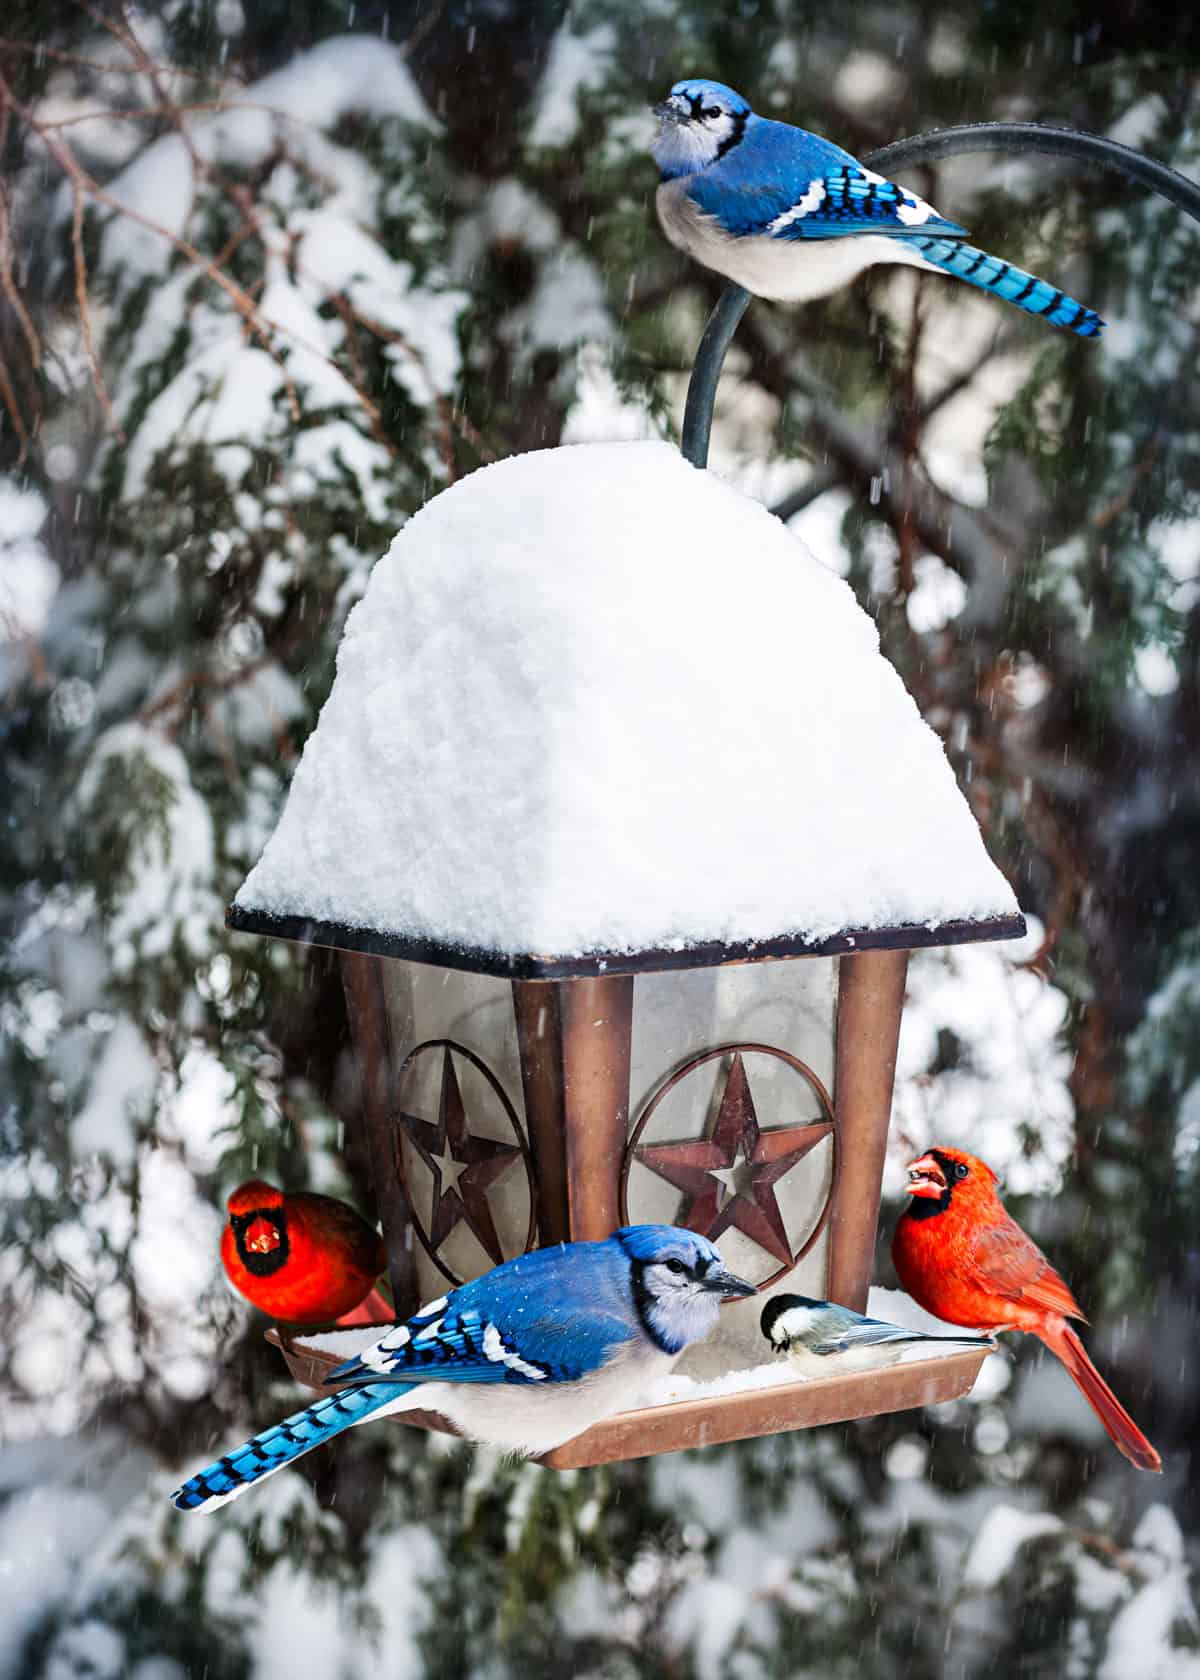 Best bird feeders for cardinals